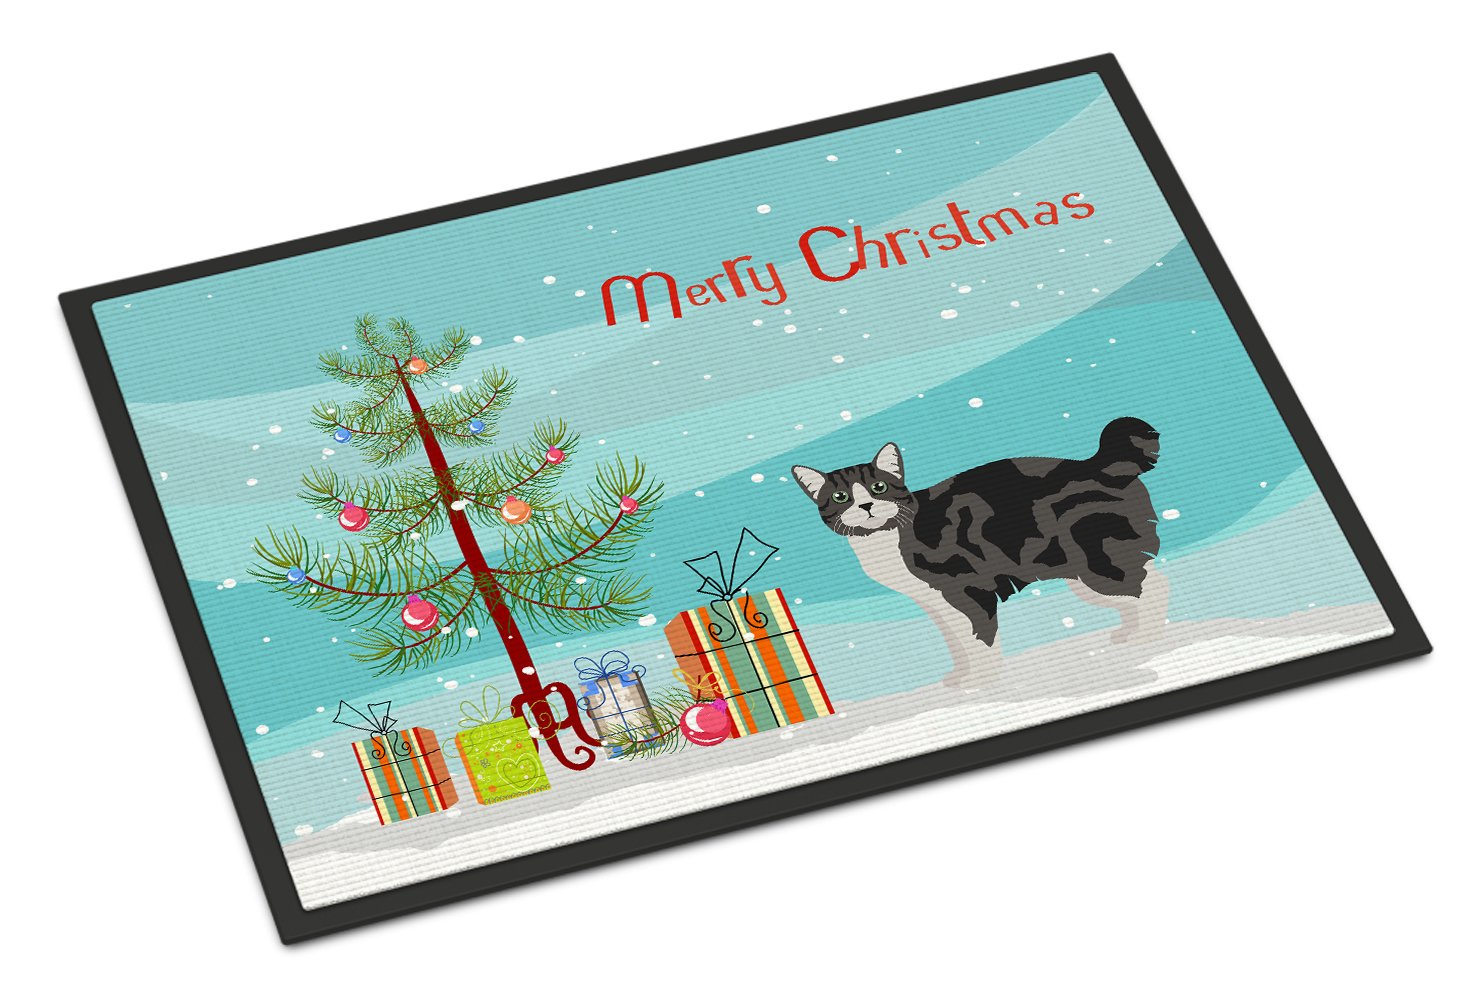 Manx #1 Cat Merry Christmas Indoor or Outdoor Mat 24x36 CK4652JMAT by Caroline's Treasures